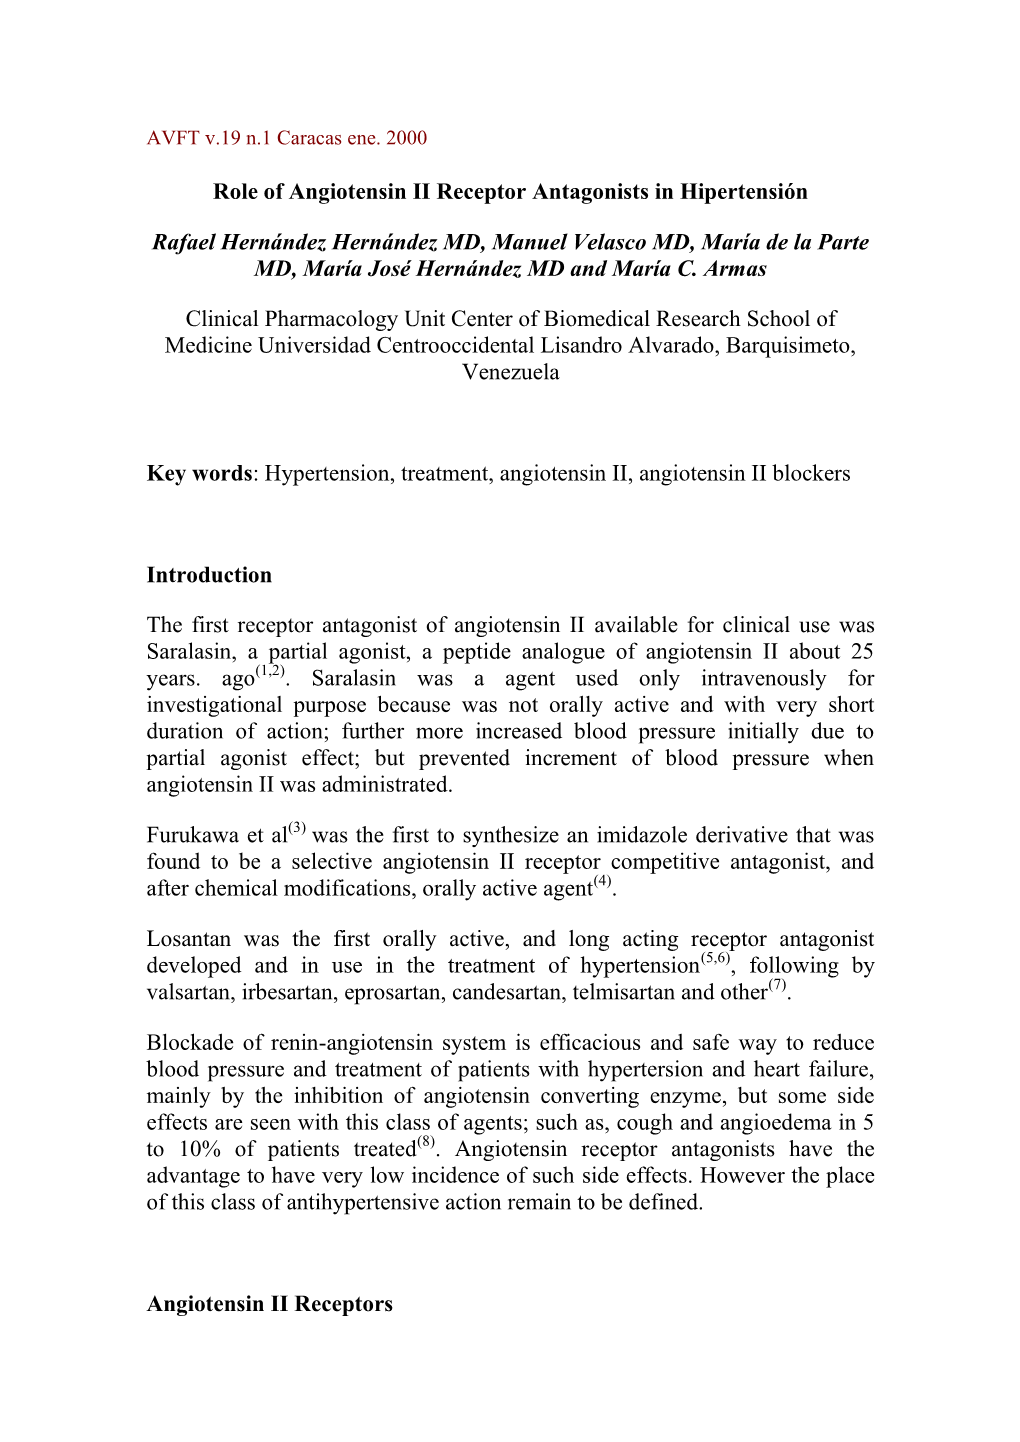 Role of Angiotensin II Receptor Antagonists in Hipertensión Rafael Hernández Hernández MD, Manuel Velasco MD, María De La Pa